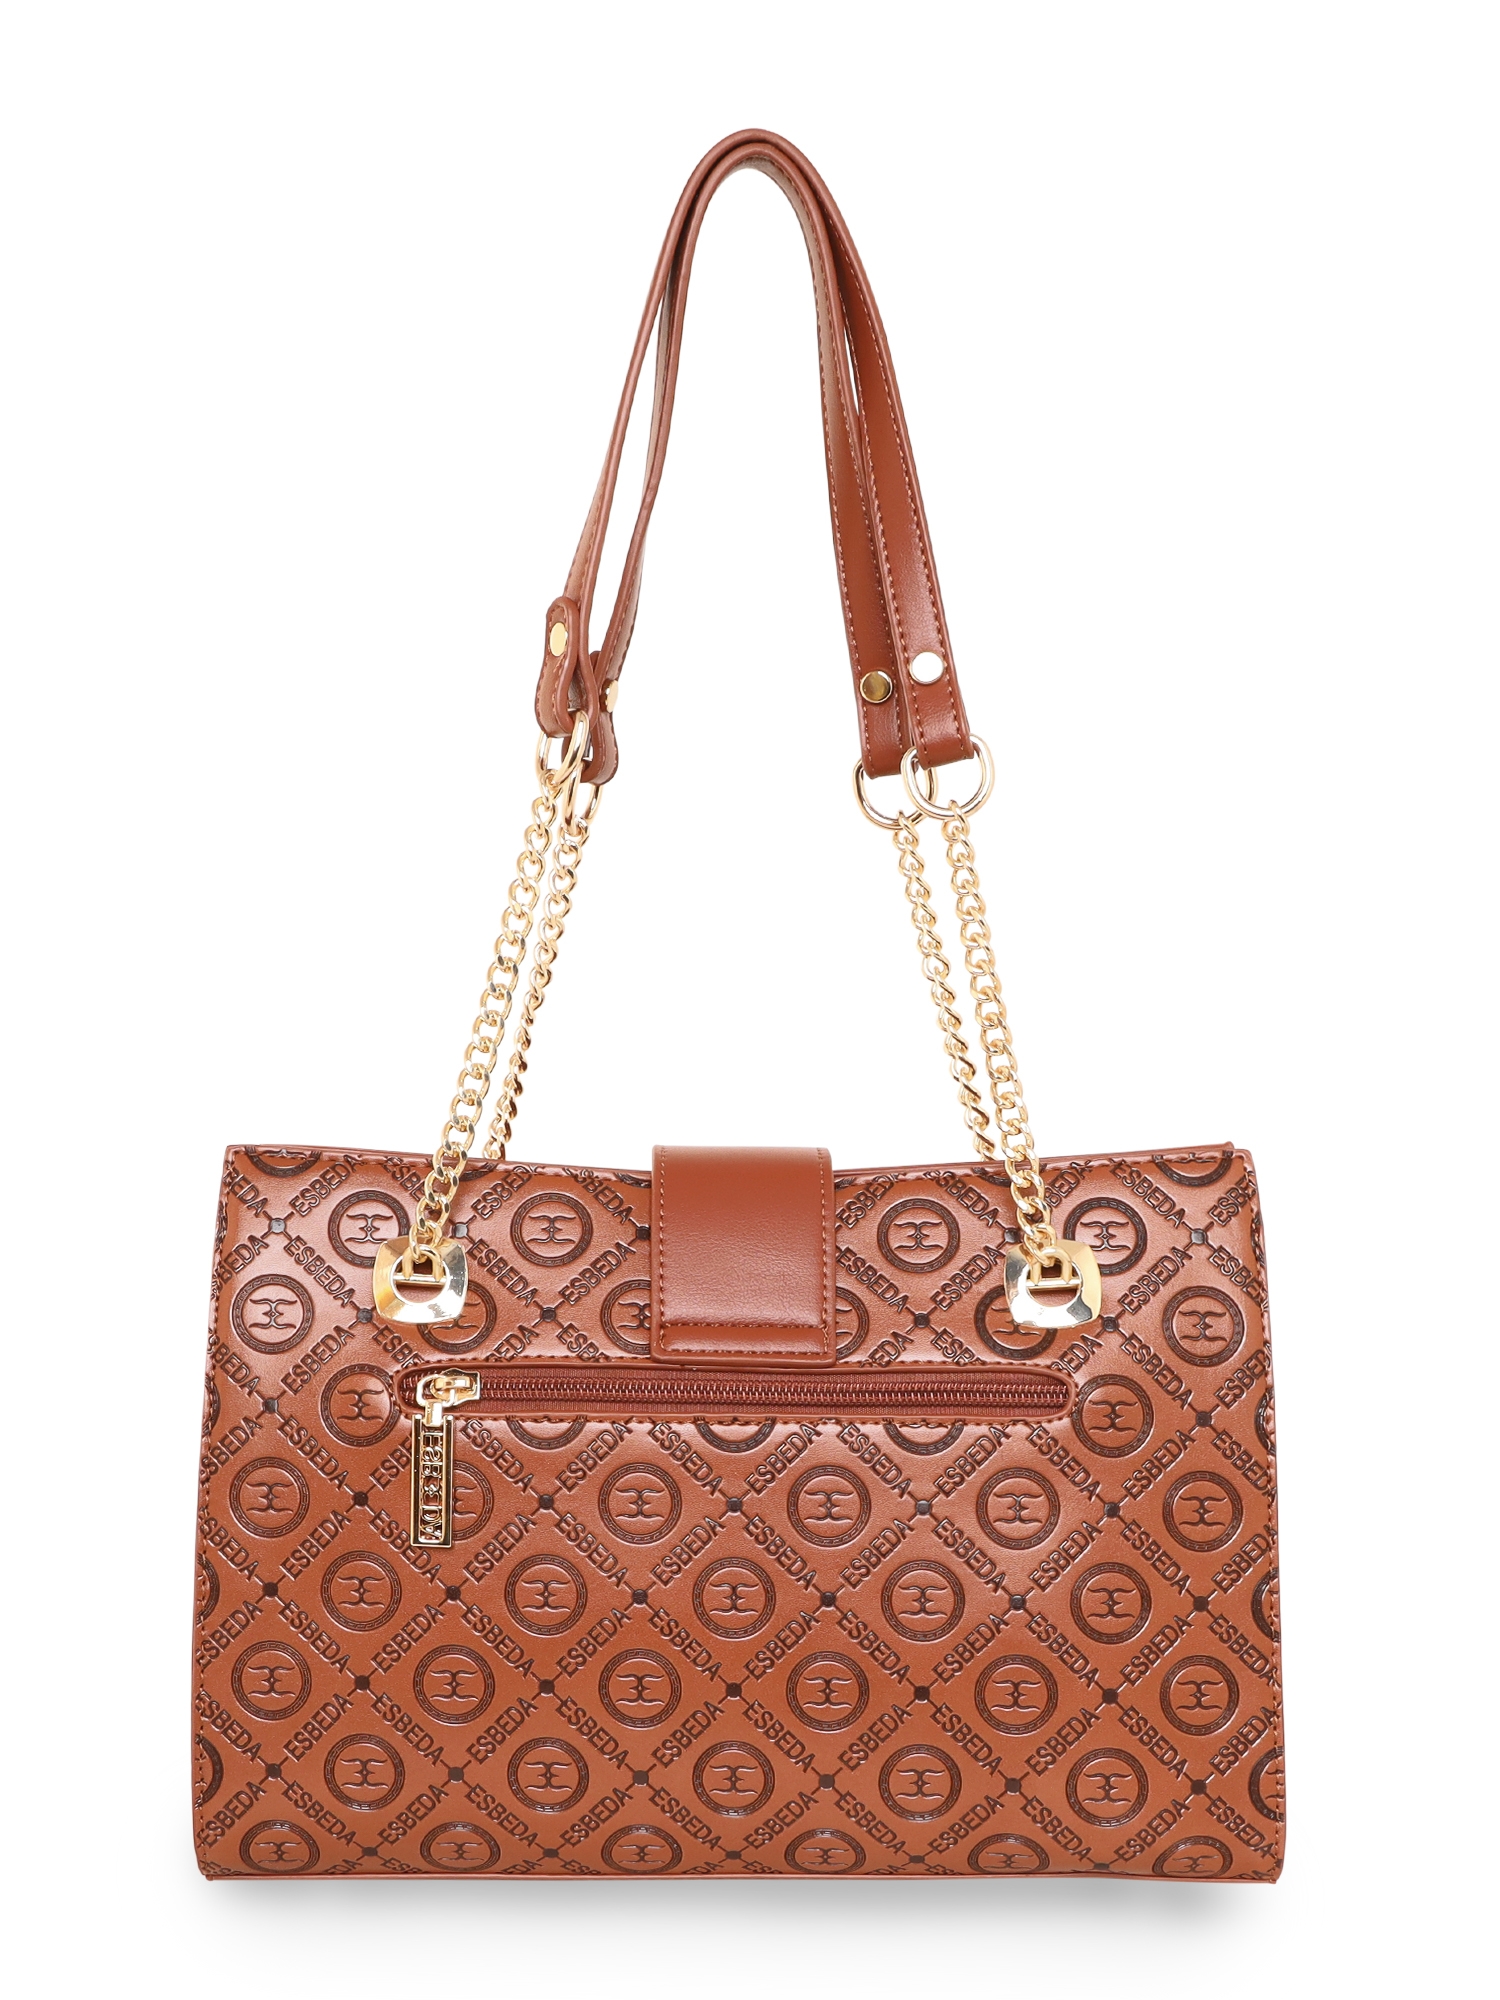 ESBEDA | Women's Brown PU Printed Handbags 2